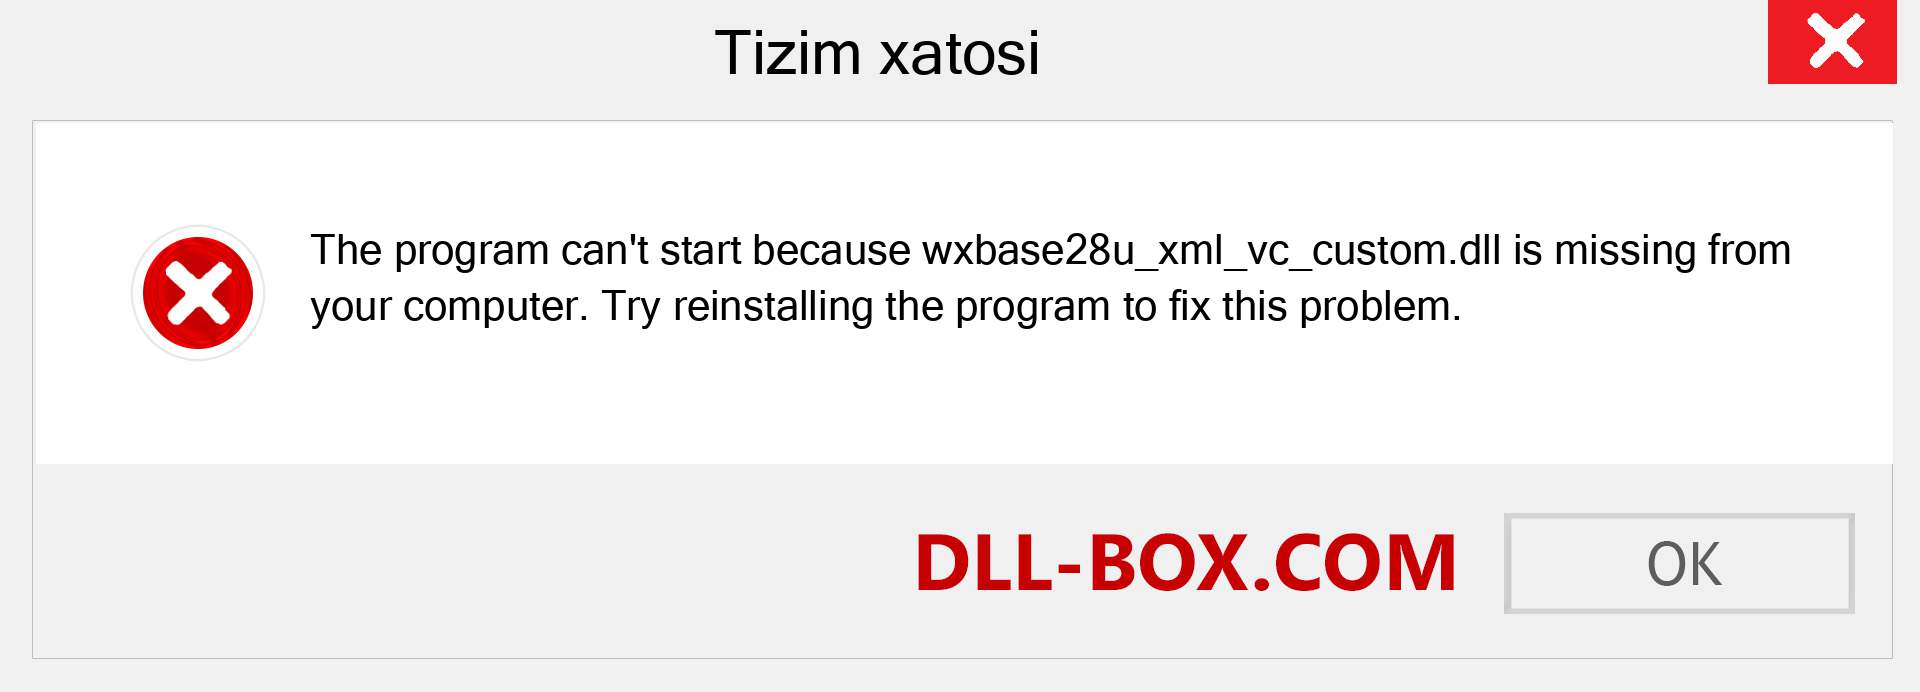 wxbase28u_xml_vc_custom.dll fayli yo'qolganmi?. Windows 7, 8, 10 uchun yuklab olish - Windowsda wxbase28u_xml_vc_custom dll etishmayotgan xatoni tuzating, rasmlar, rasmlar